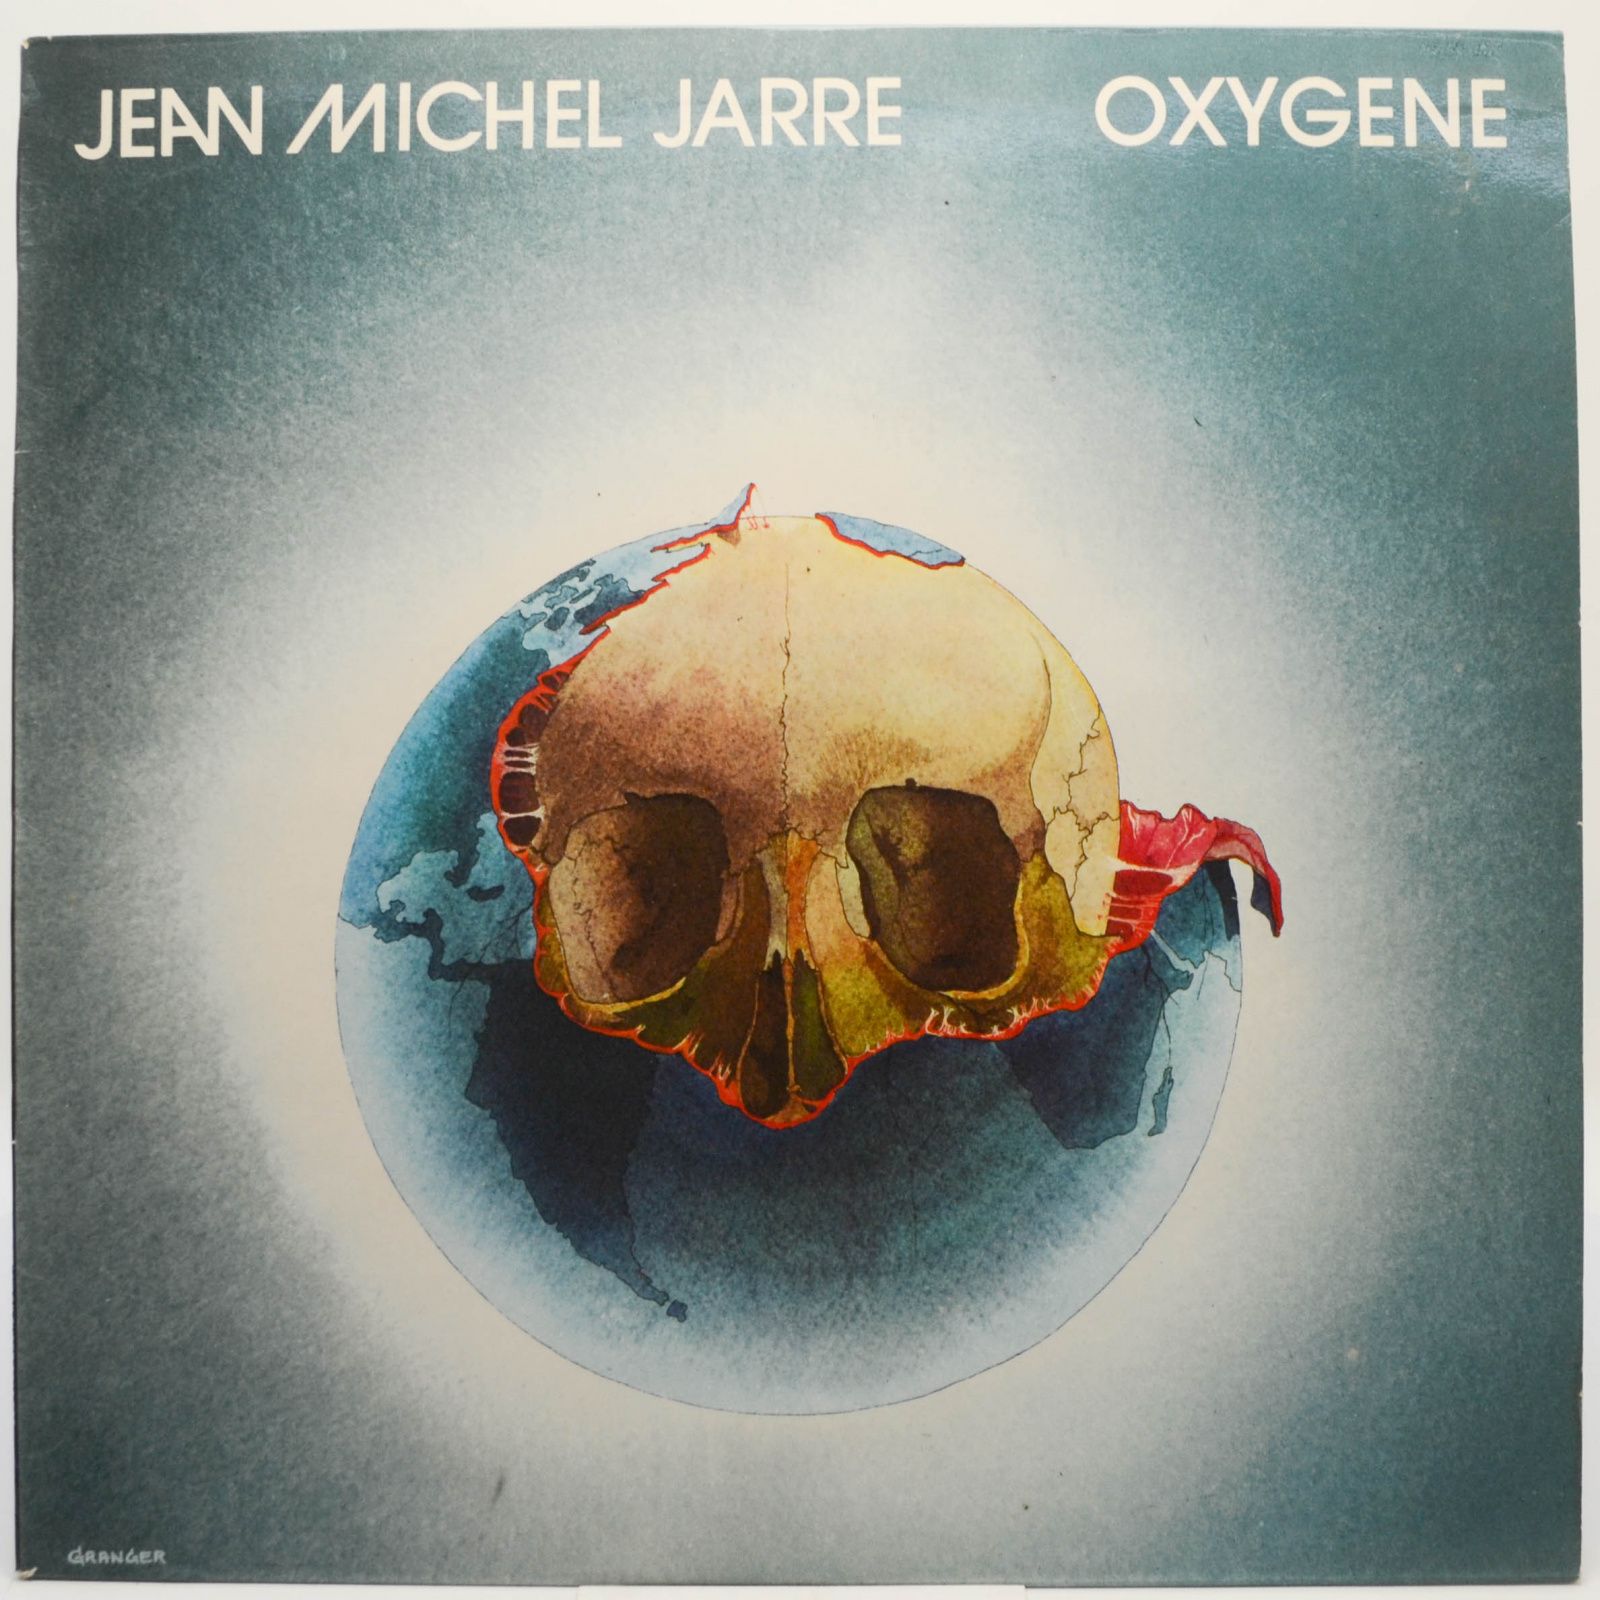 Oxygene (UK), 1976